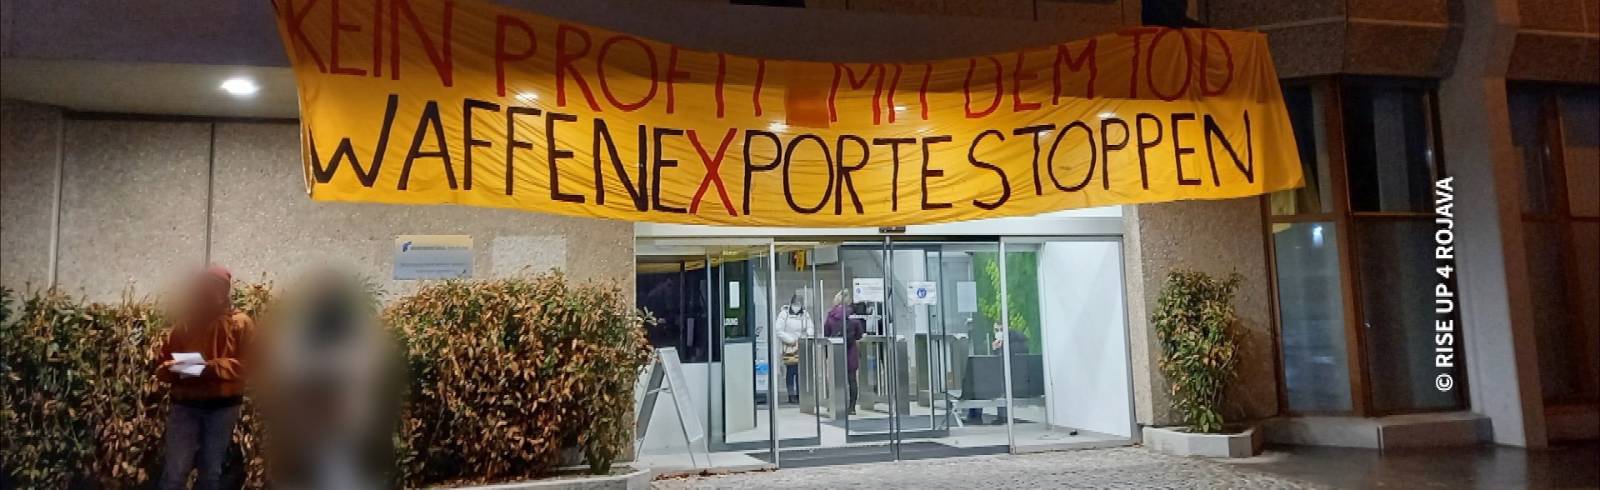 Bezirksflash: Demo-Blockade gegen Waffenexport